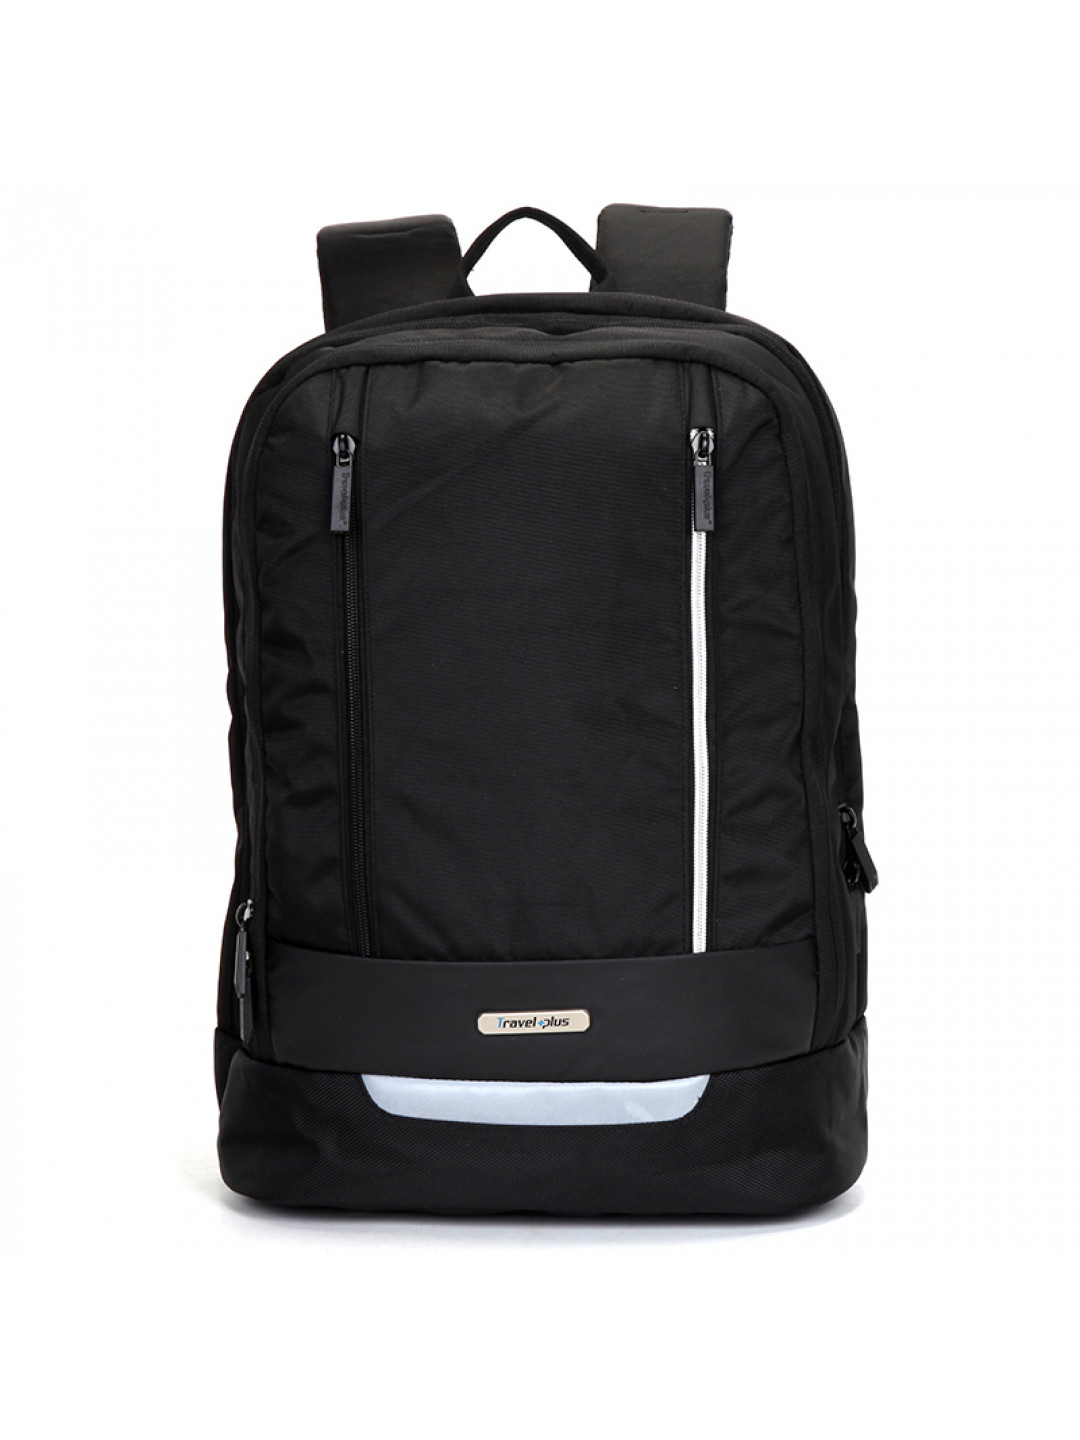 Originální školní a cestovní batoh černý – Travel plus 0145 černá